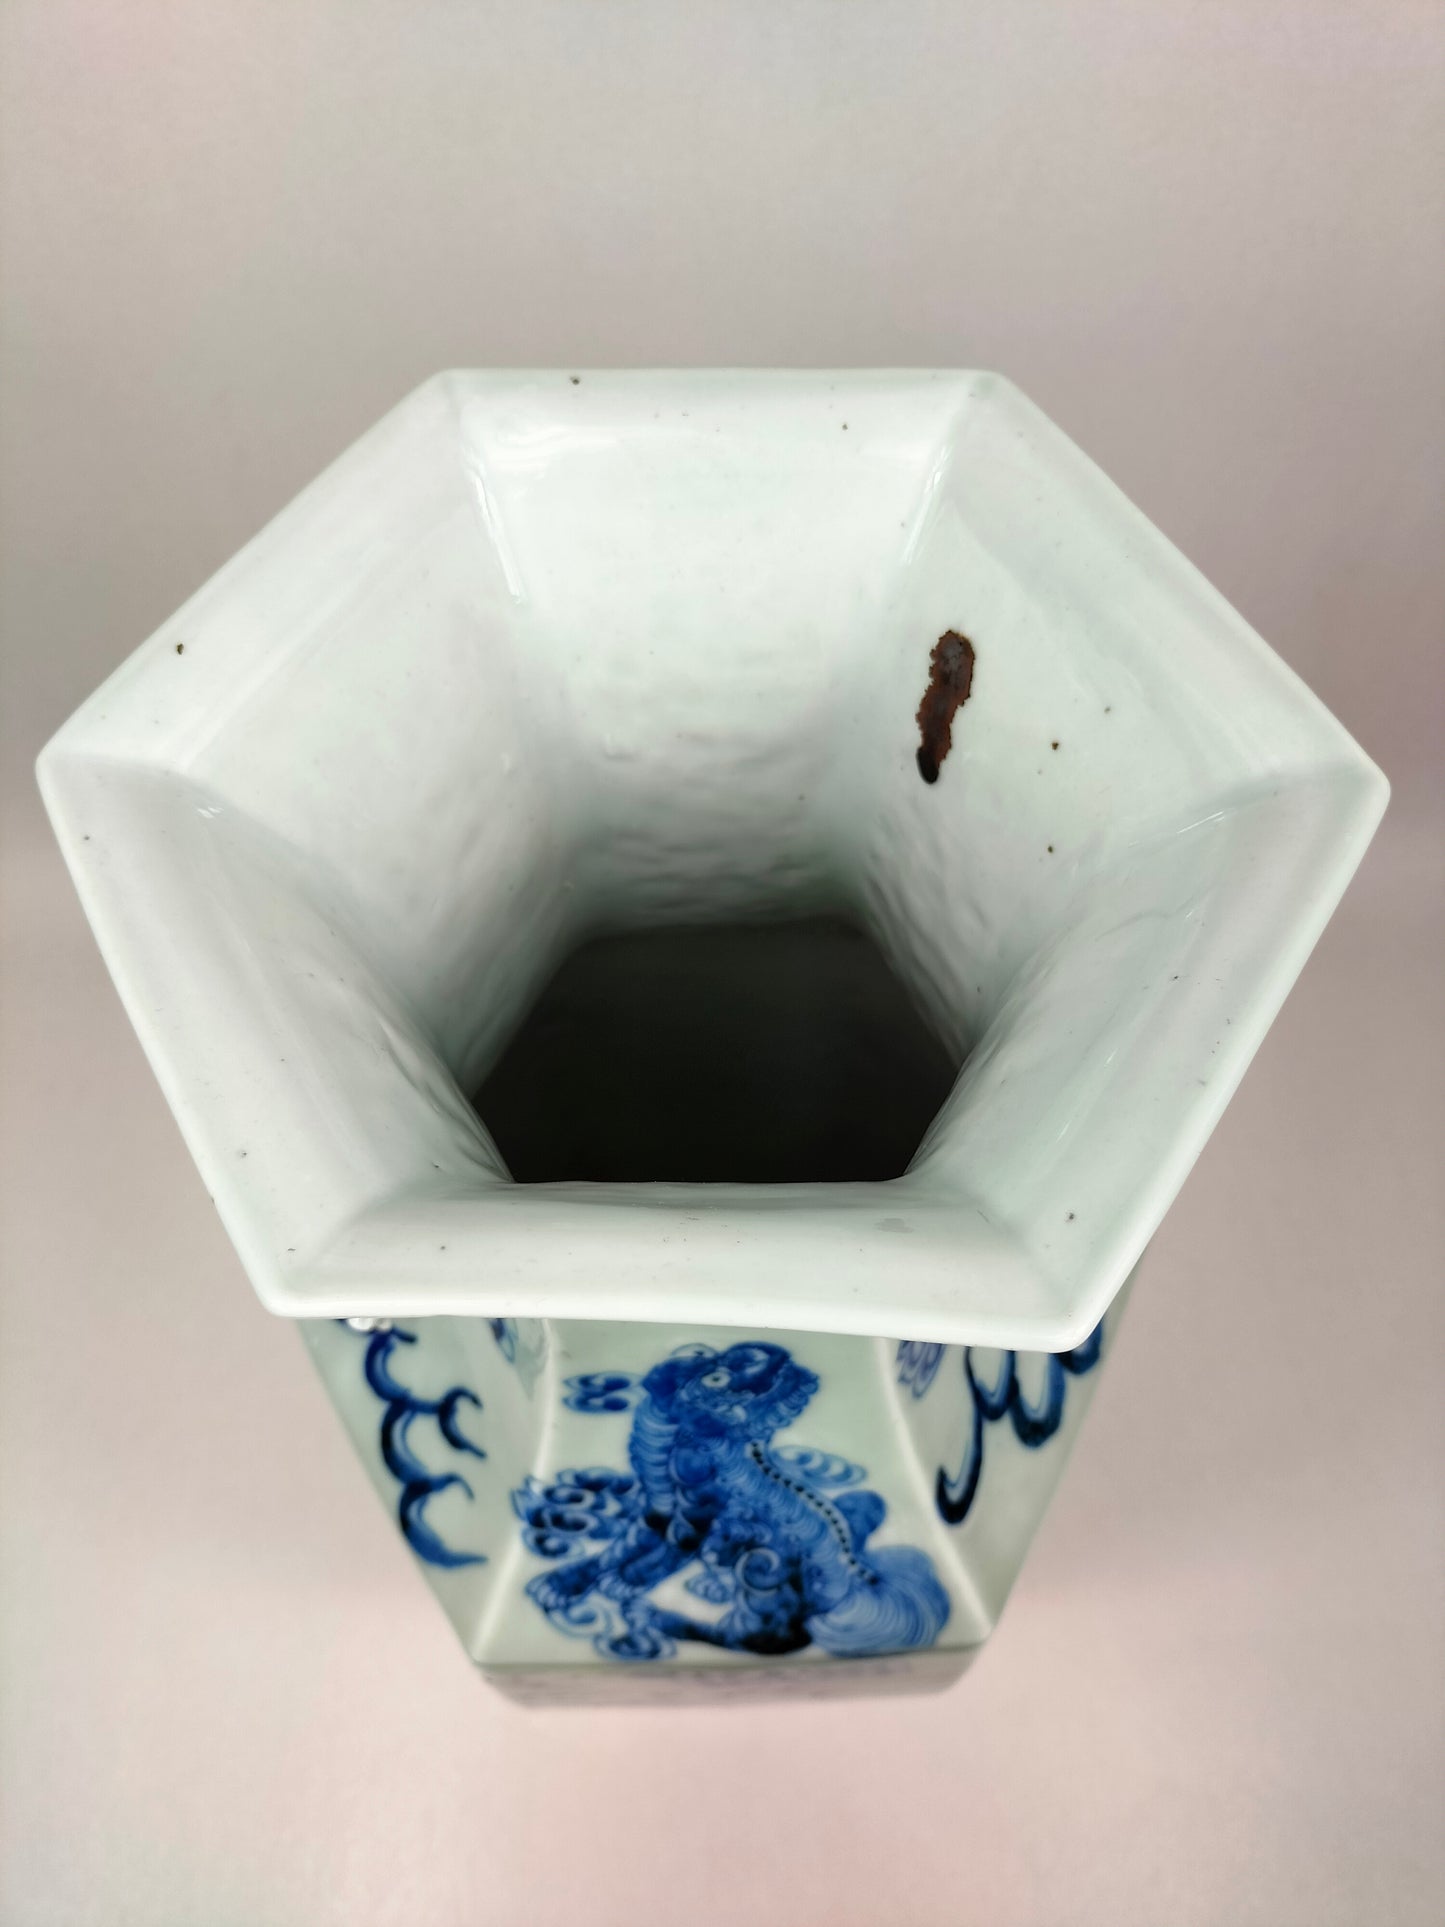 Grand vase antique chinois hexagonal en céladon foo dog // Dynastie Qing - Milieu du 19ème siècle